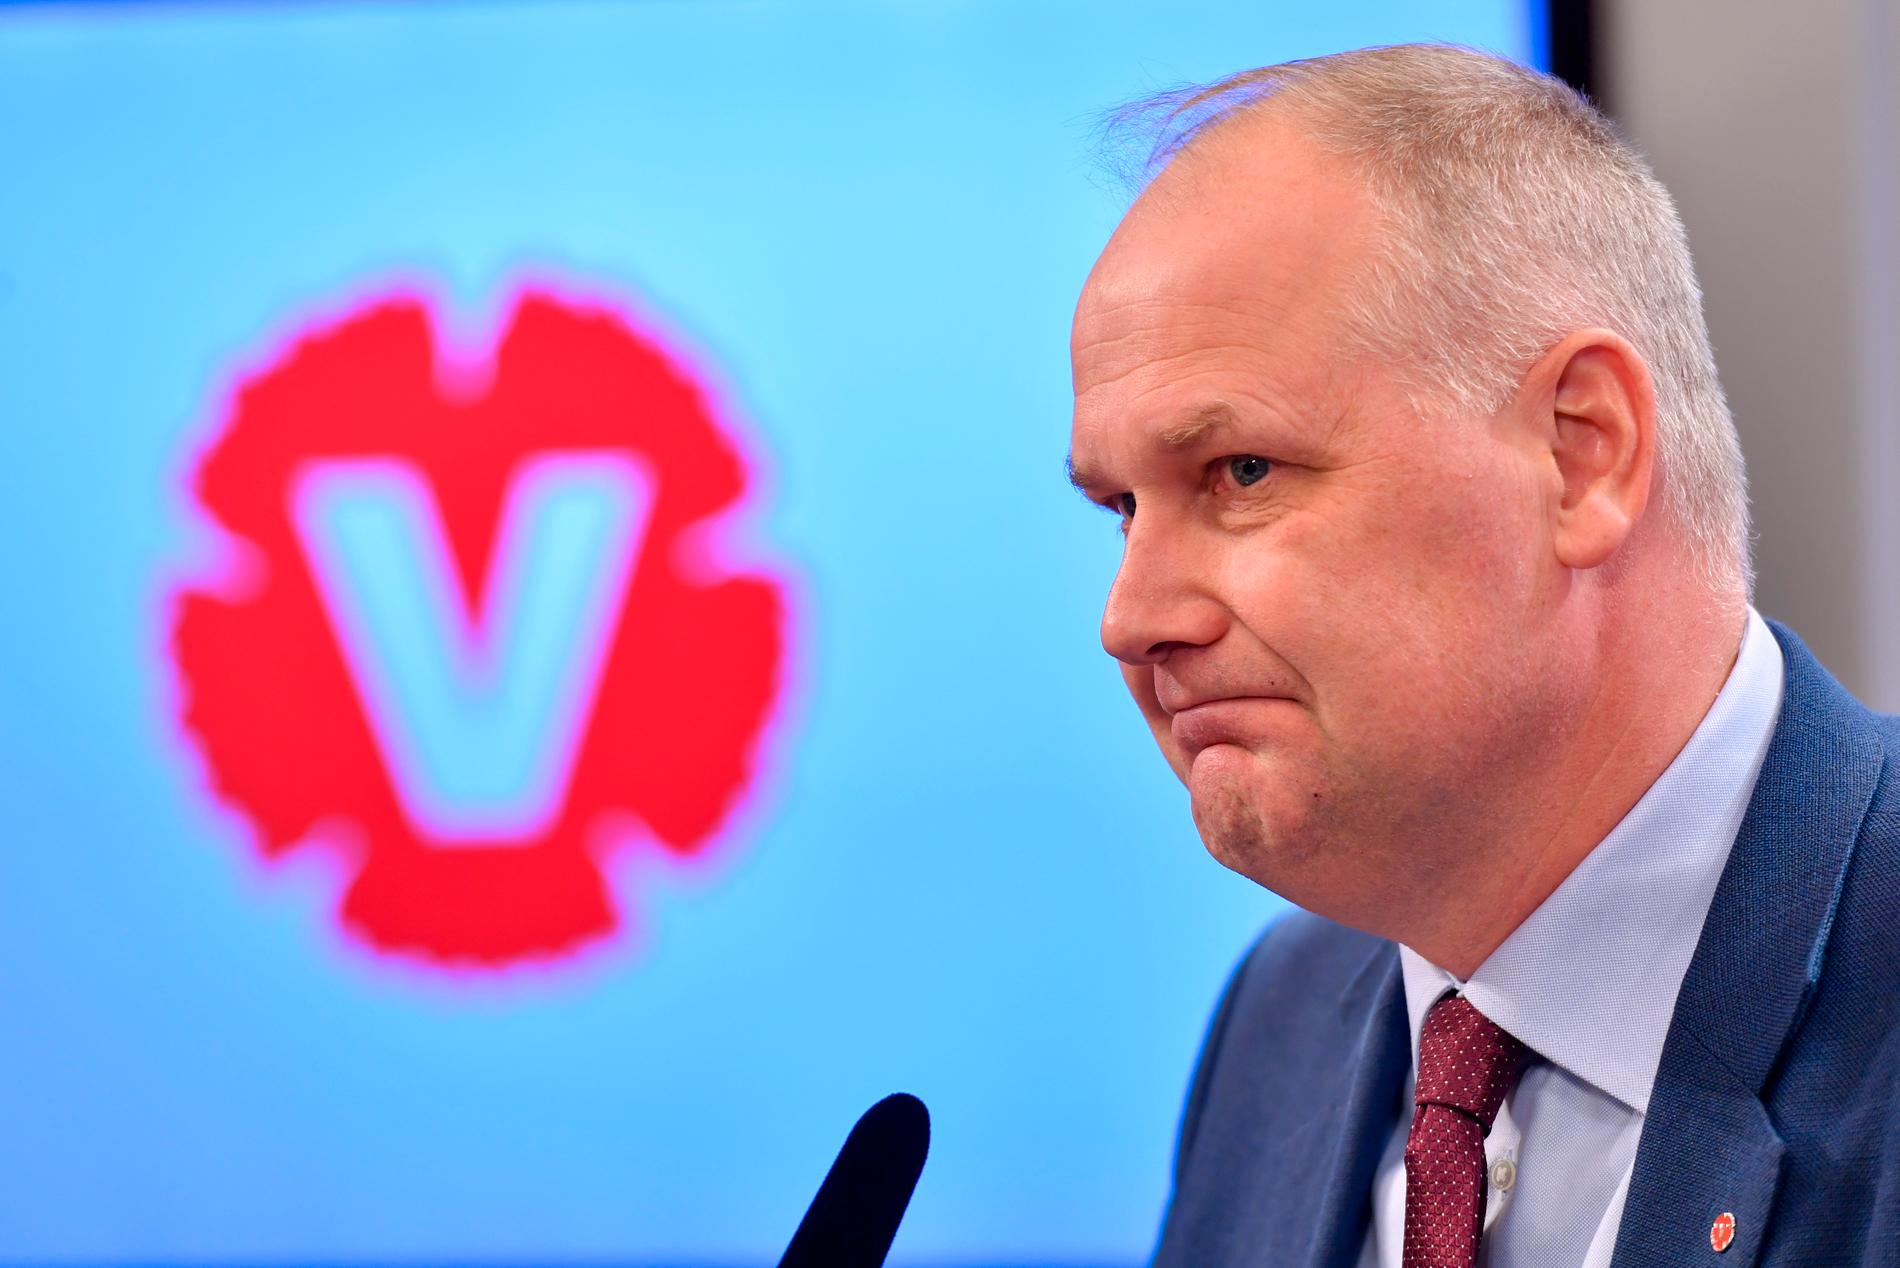 Vänsterpartiets ledare Jonas Sjöstedt ska övertyga partiet i helgen att inte driva kravet att Sverige ska lämna EU. Arkivbild.